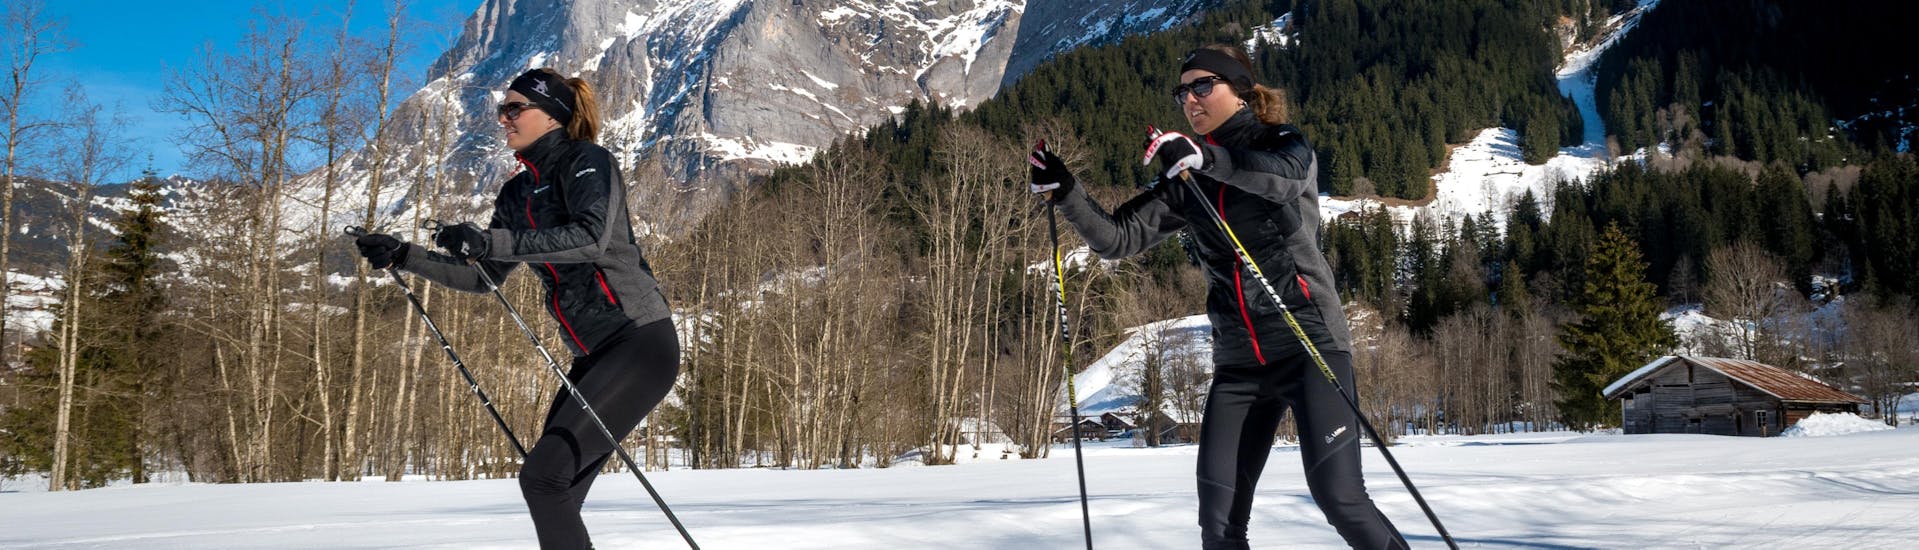 Twee langlaufers genieten van de frisse lucht tijdens hun privé-langlaufcursus voor alle niveaus met de Grindelwald-skischool.